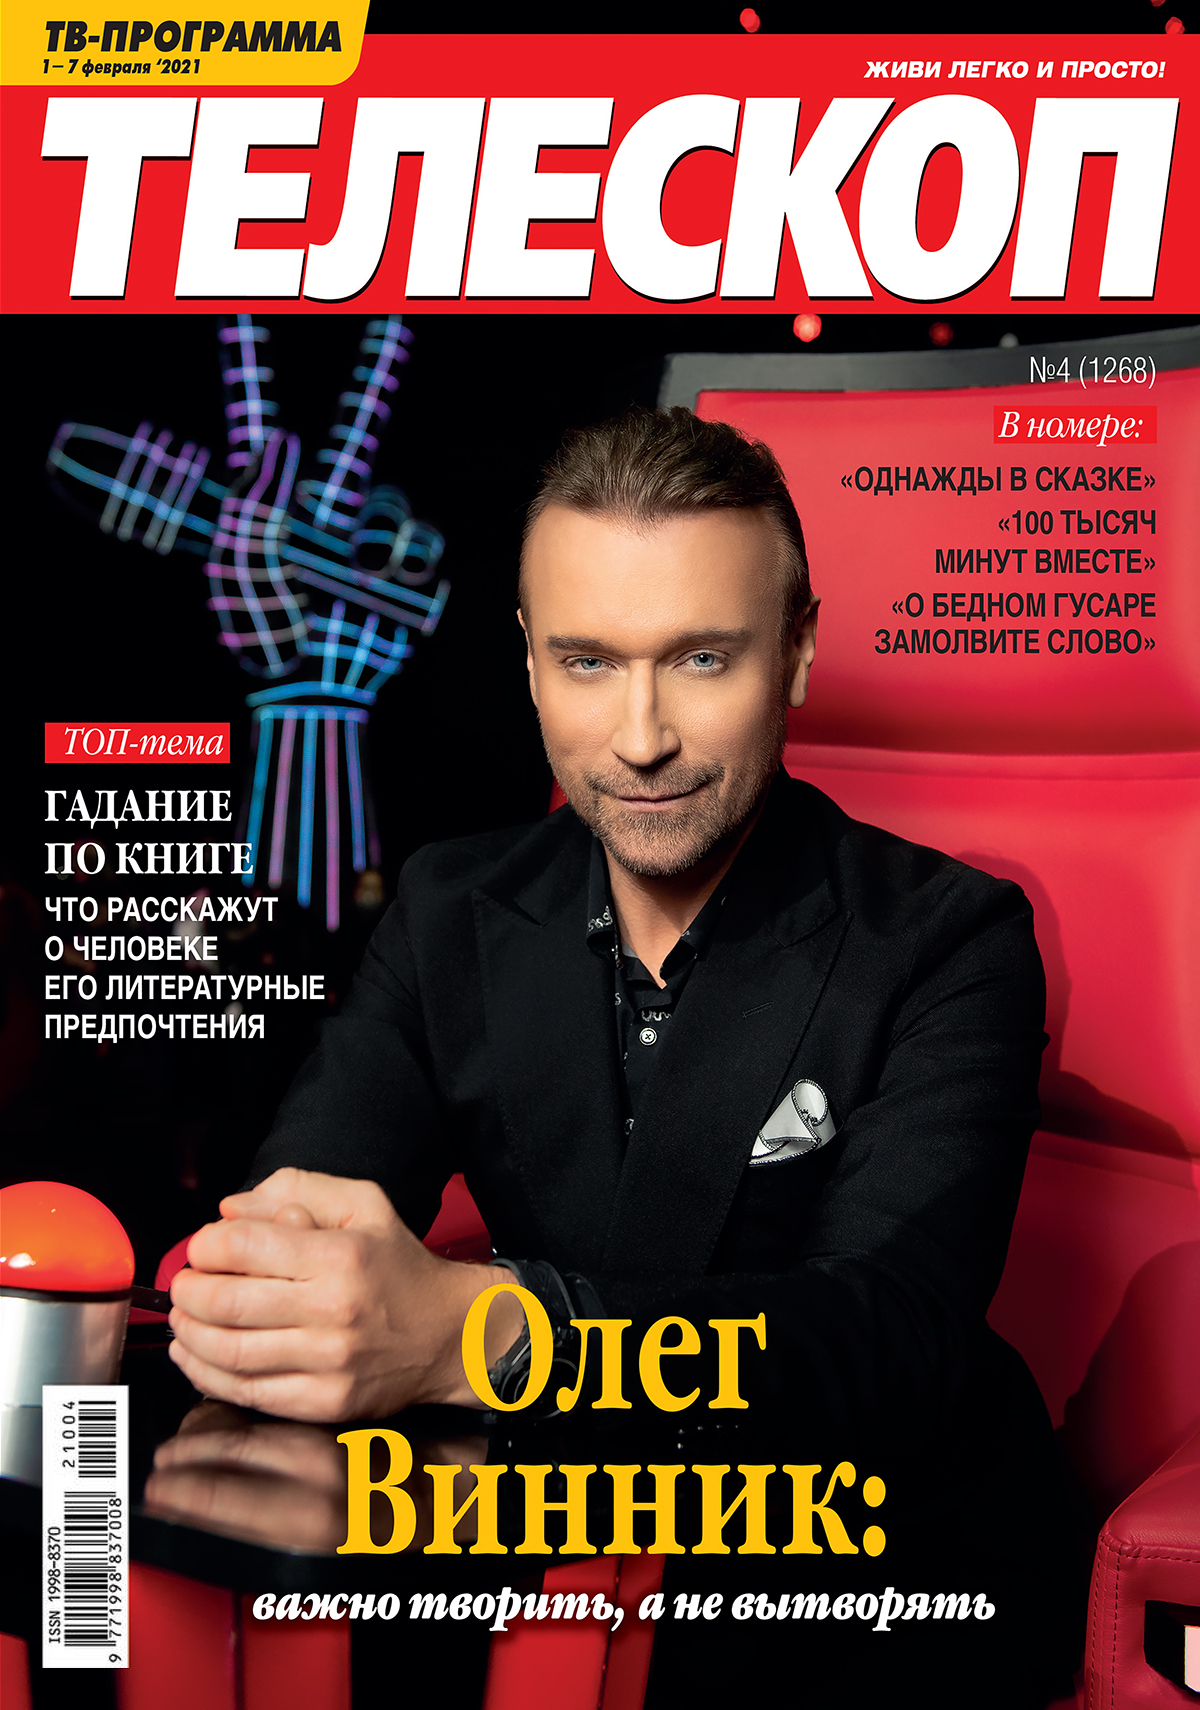 Олег Винник появился на обложке журнала 